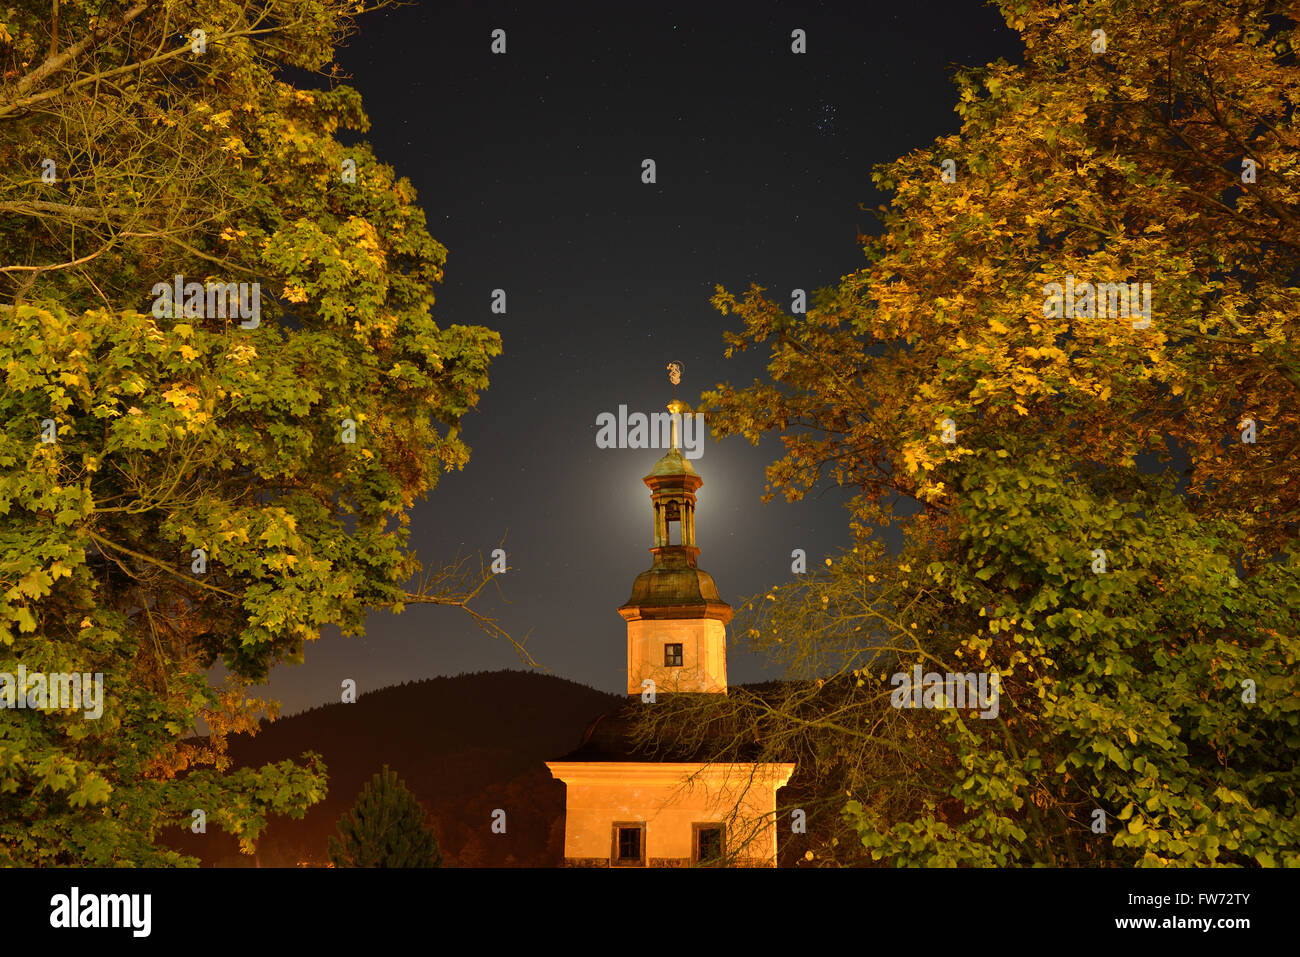 Kirche und Laub von Straßenlaternen mit dem Mond hinter dem Kirchturm beleuchtet. Loket, Bezirk Sokolov, Böhmen, Tschechische Republik. Stockfoto